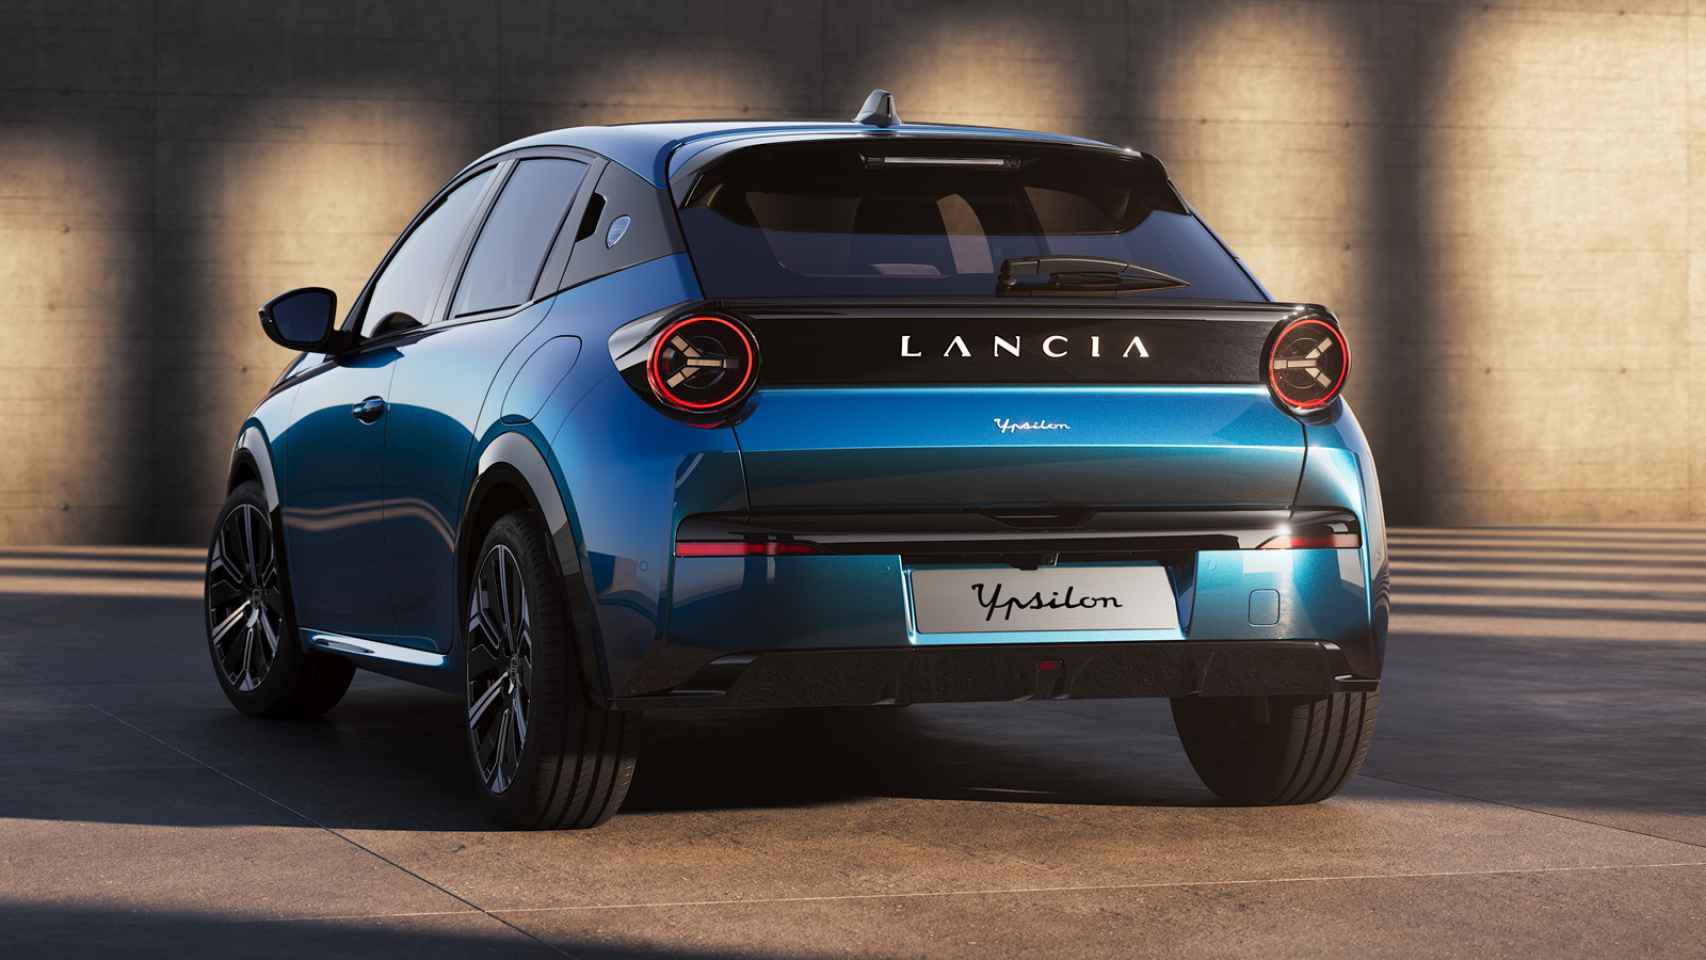 El Lancia Ypsilon es un coche premium de Stellantis en el segmento urbano.